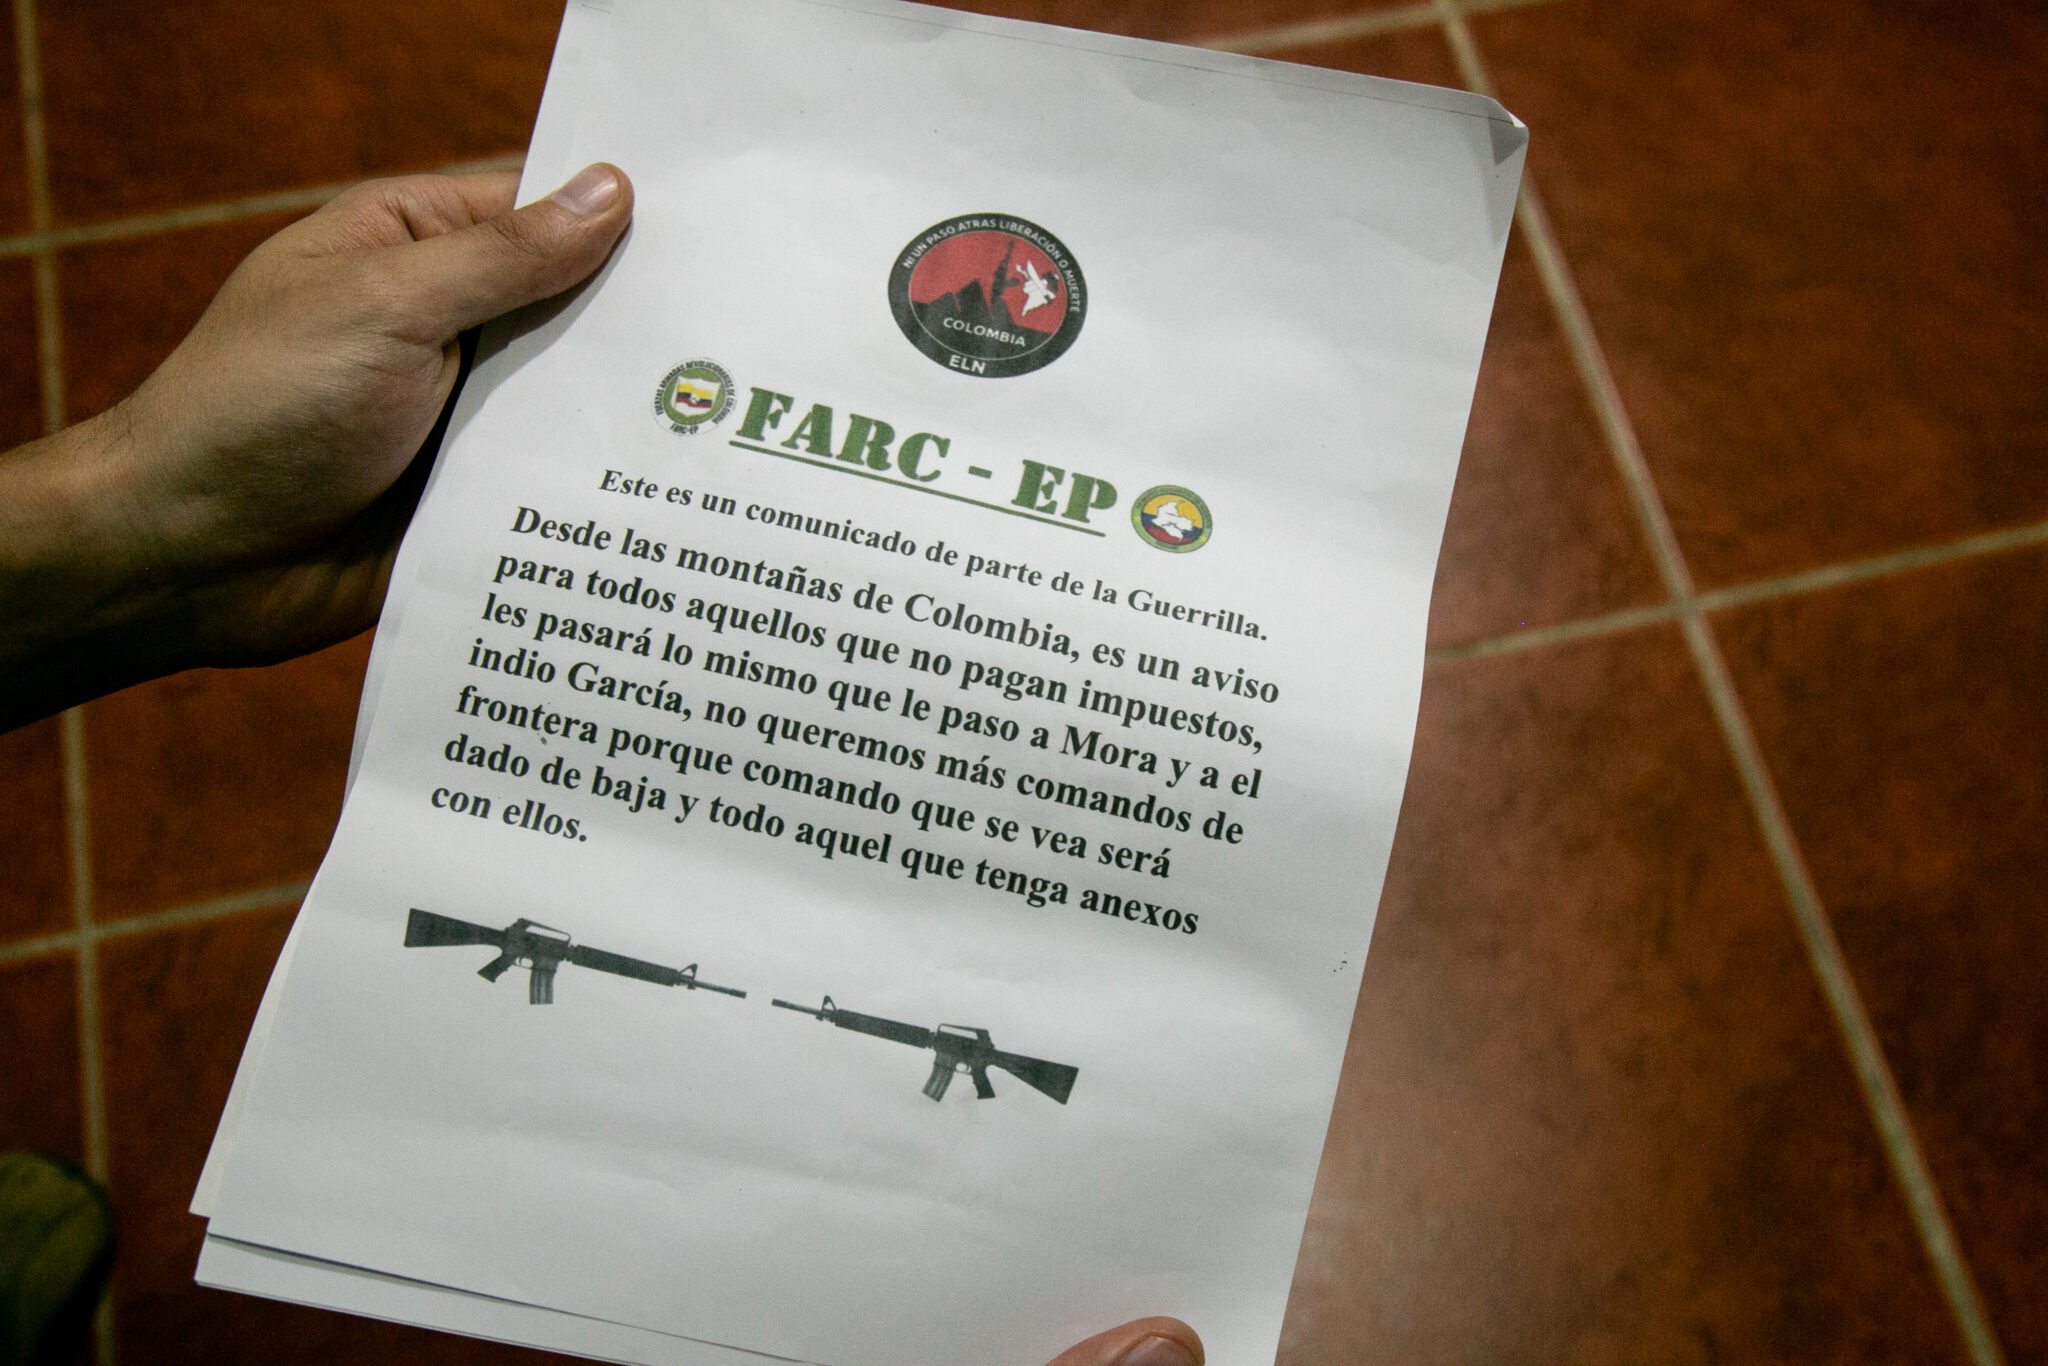 Ecuador Amazonía. Comunicado dejado en una radio de Lago Agrio, capital de Sucumbíos. Muestra logos de las FARC-EP, siglas del ELN, y amenaza a los Comandos de la Frontera.